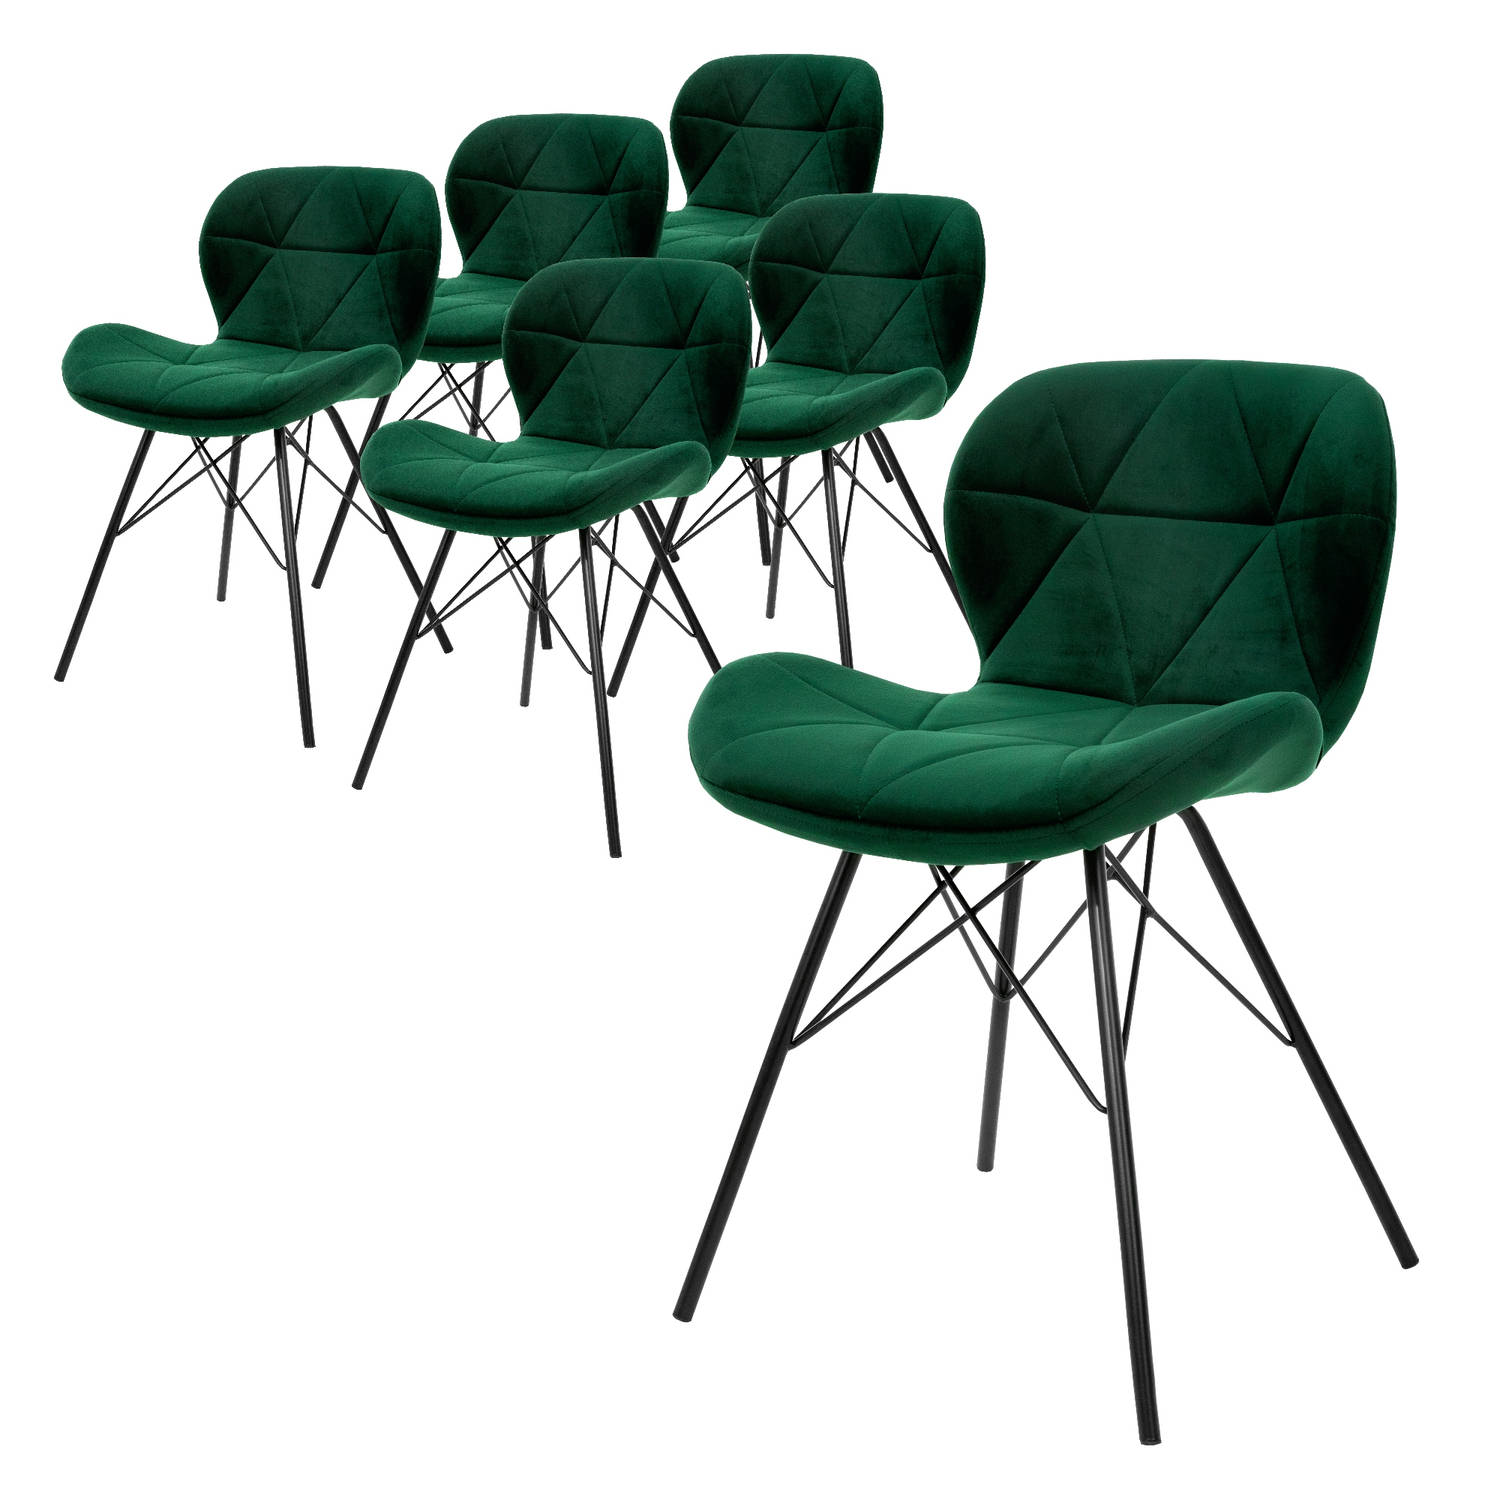 ML-Design Set van 6 eetkamerstoelen met rugleuning, donkergroen, keukenstoel met fluwelen bekleding en metalen poten, ergonomische stoel voor eettafel, woonkamerstoel keukenstoelen